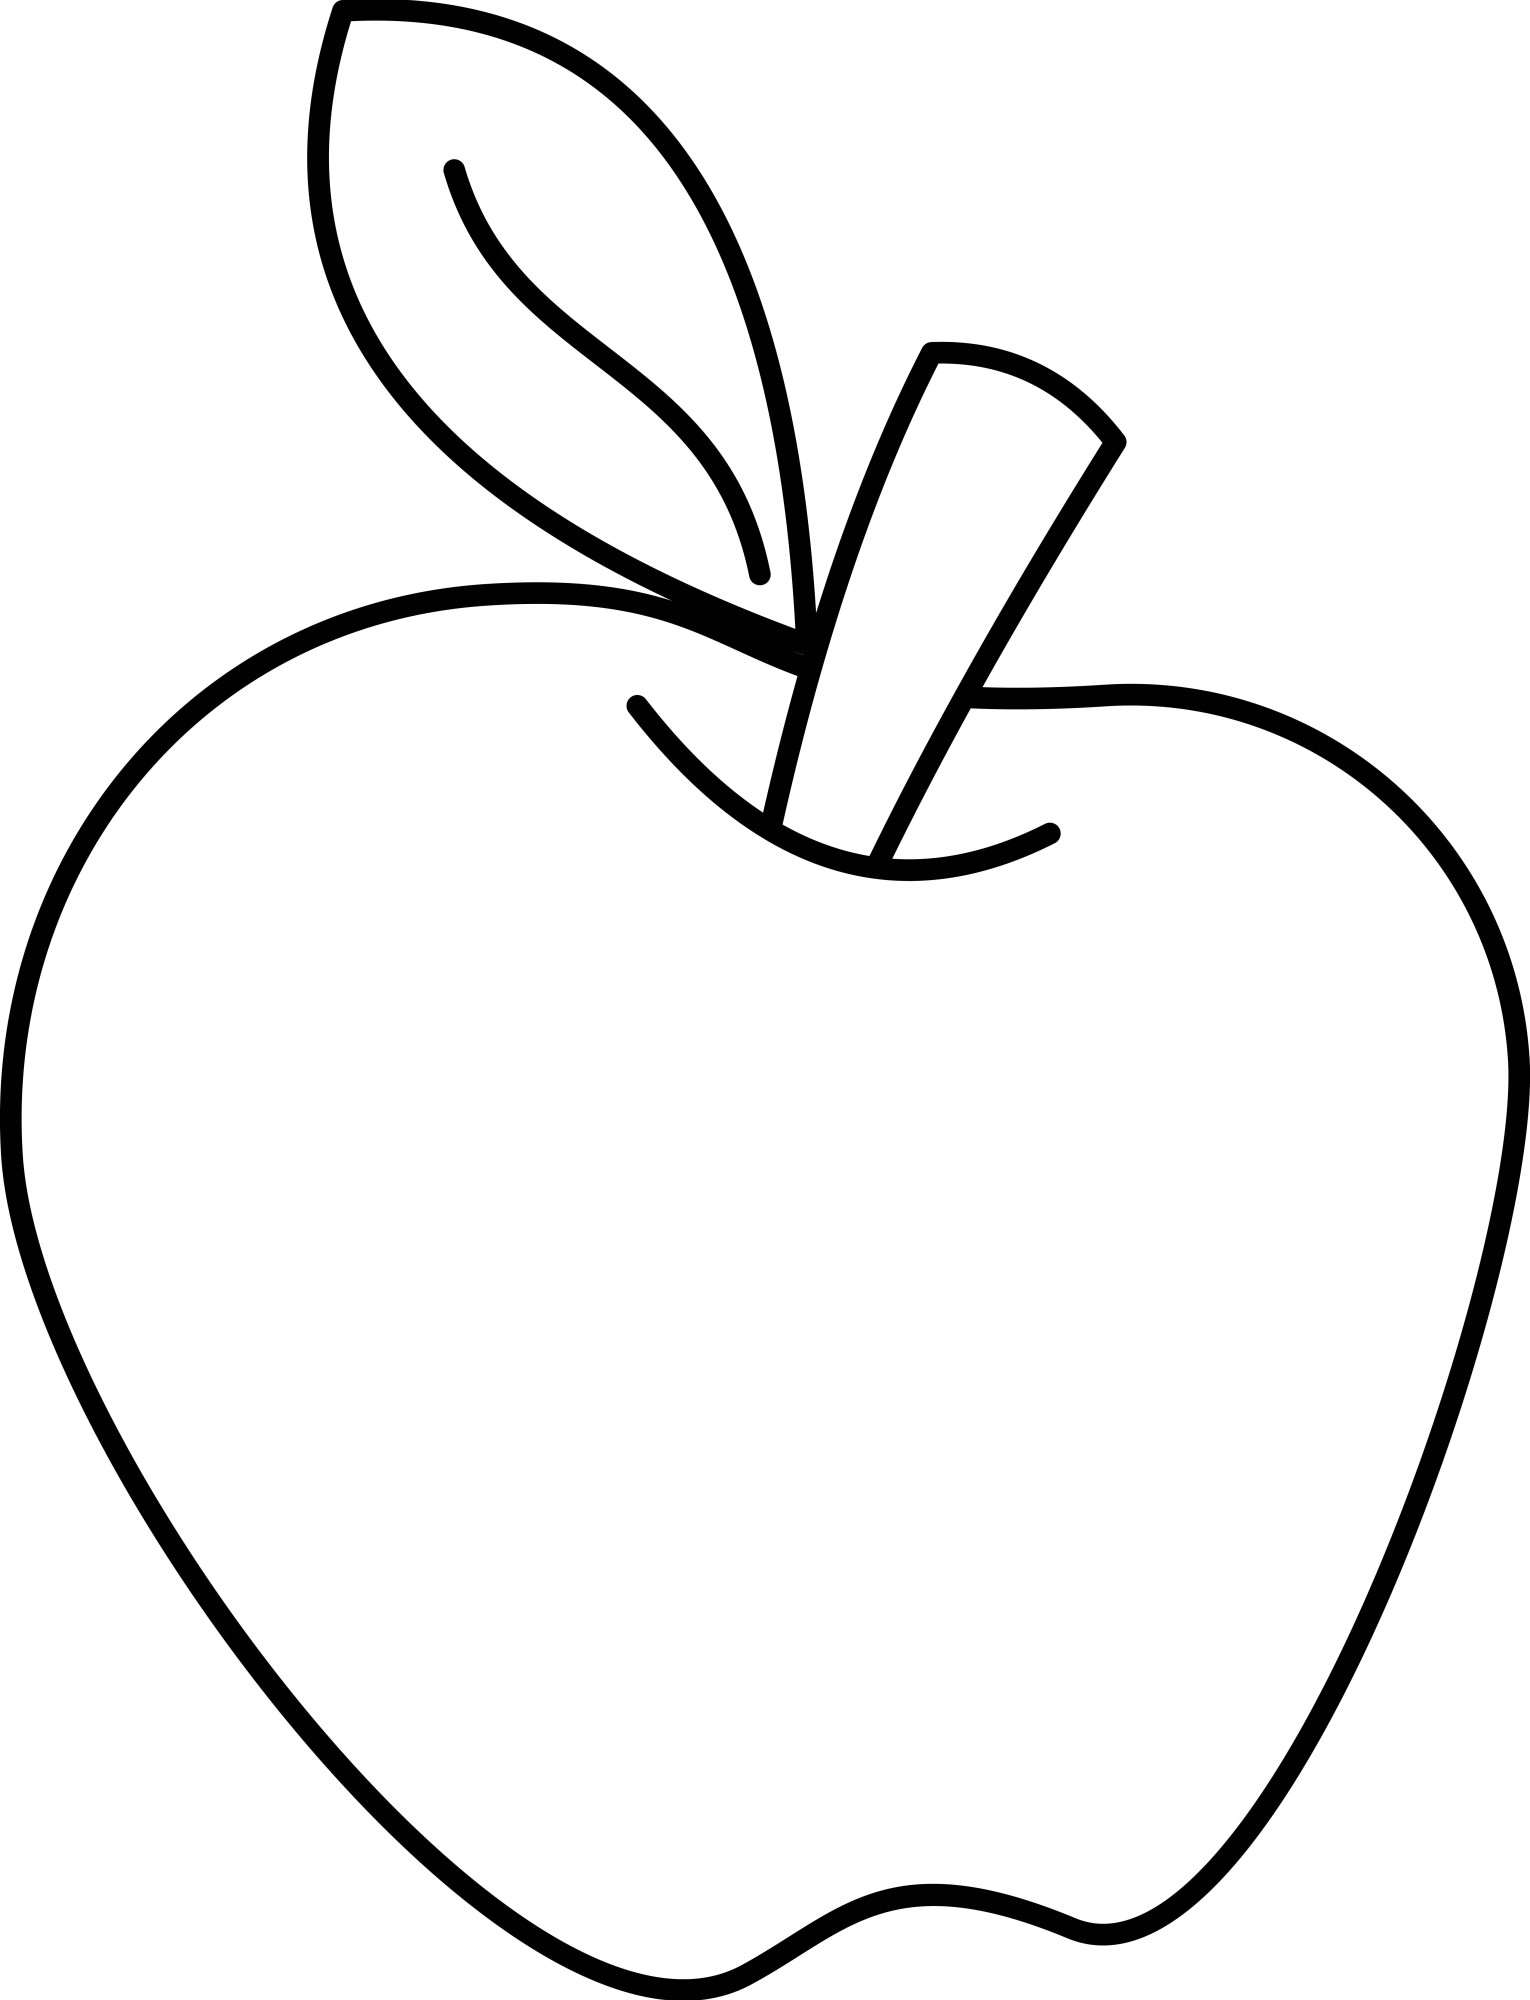 Раскраска для детей: сочное яблоко